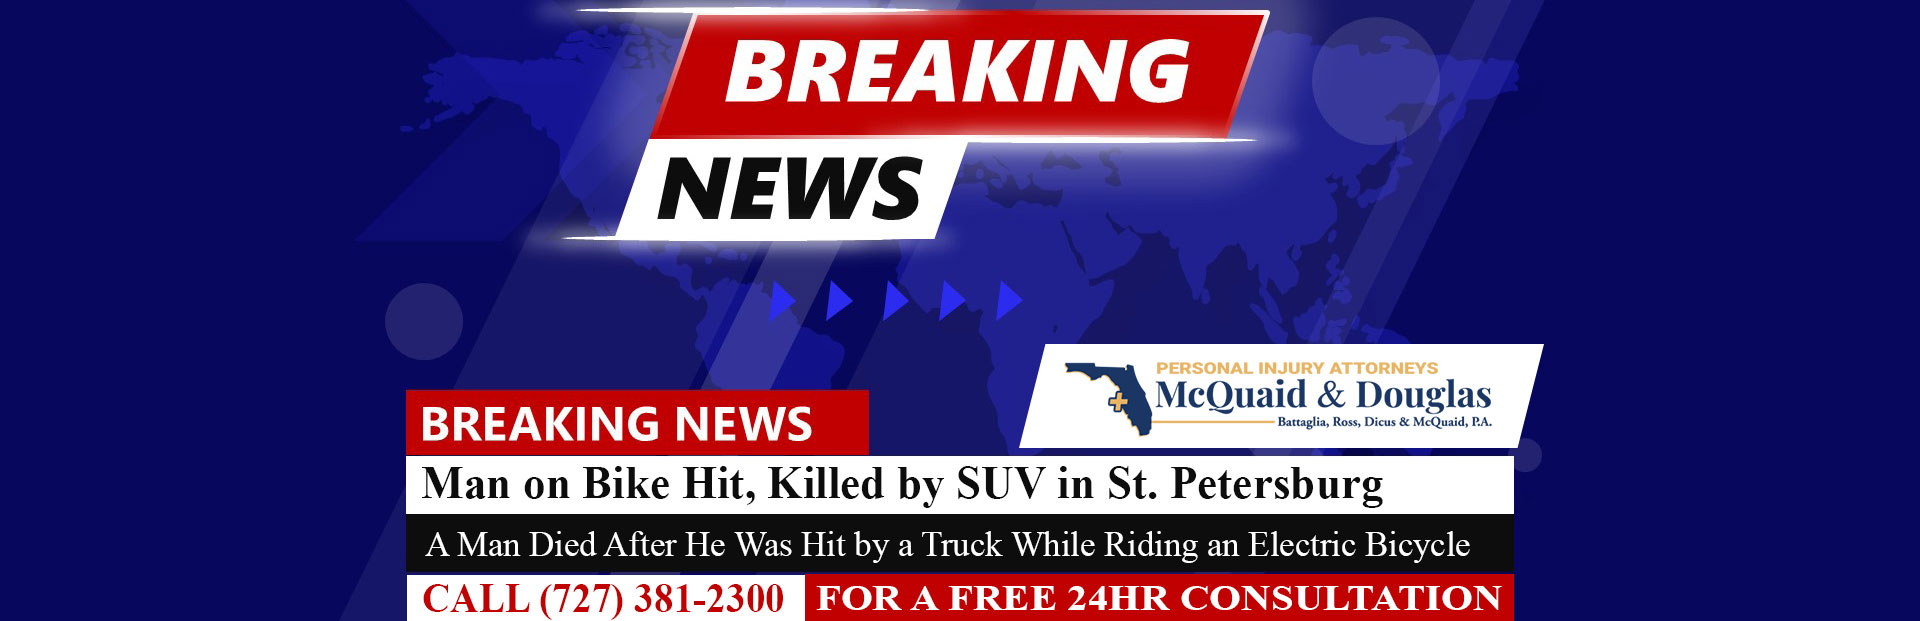 [01-31-23] Man on Bike Hit, Killed by SUV in St. Petersburg